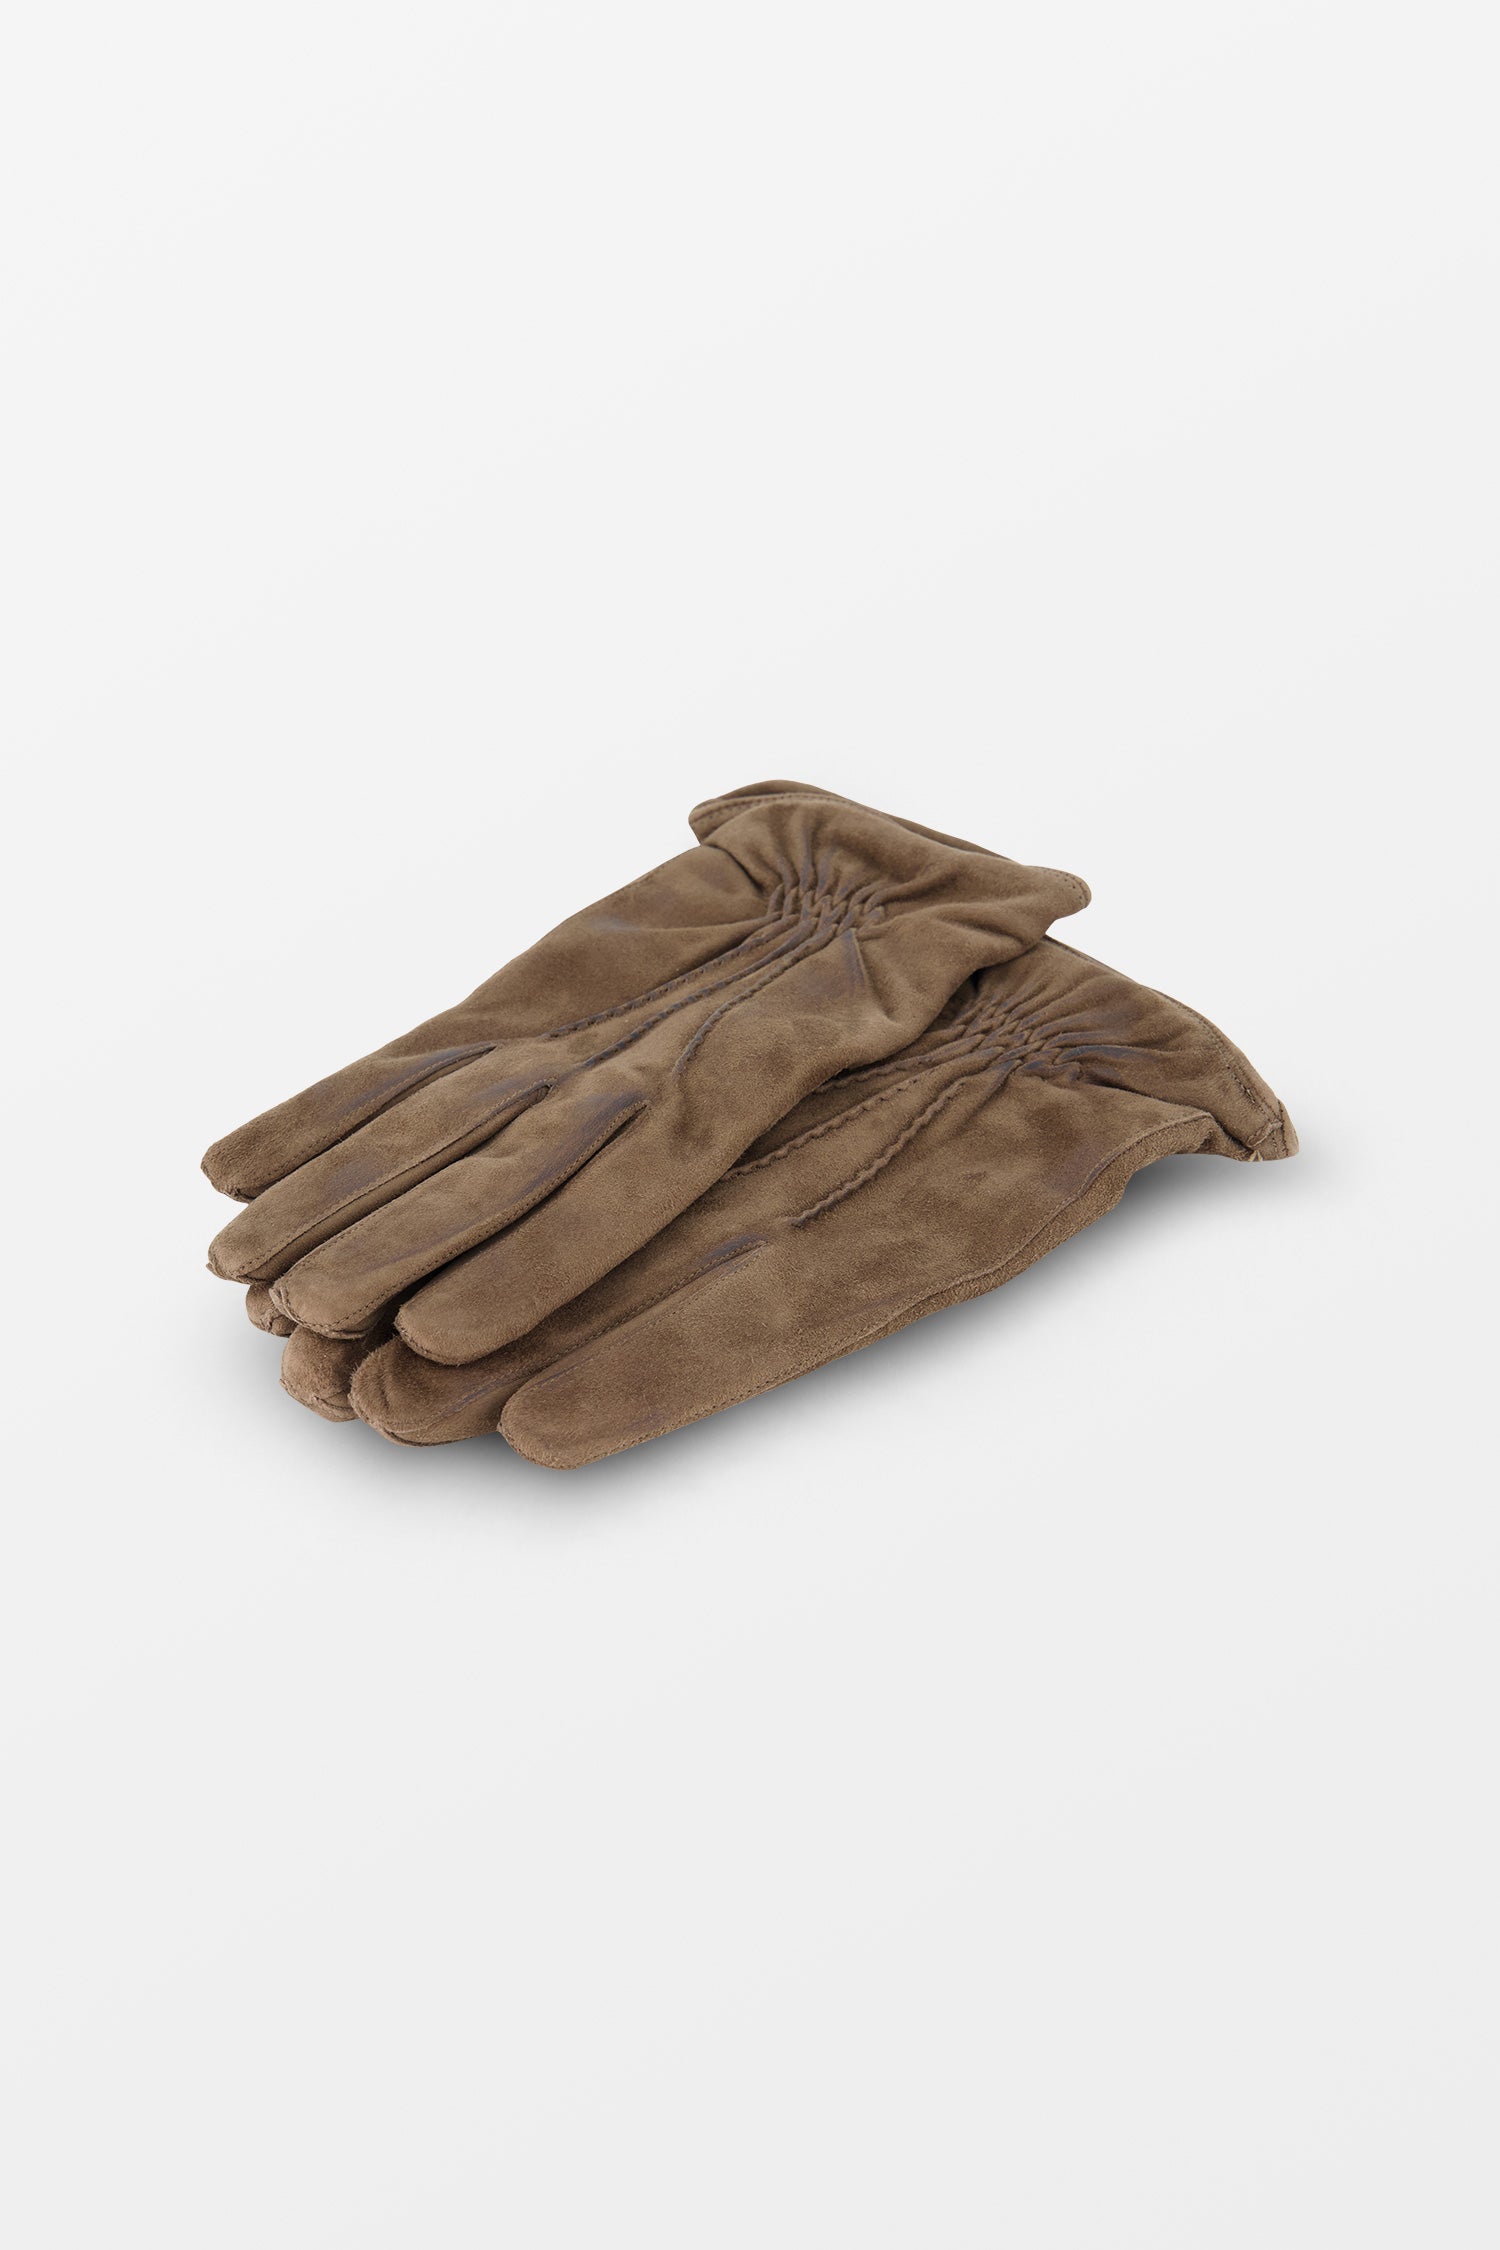 Barba Napoli Dark Brown Leather Gloves